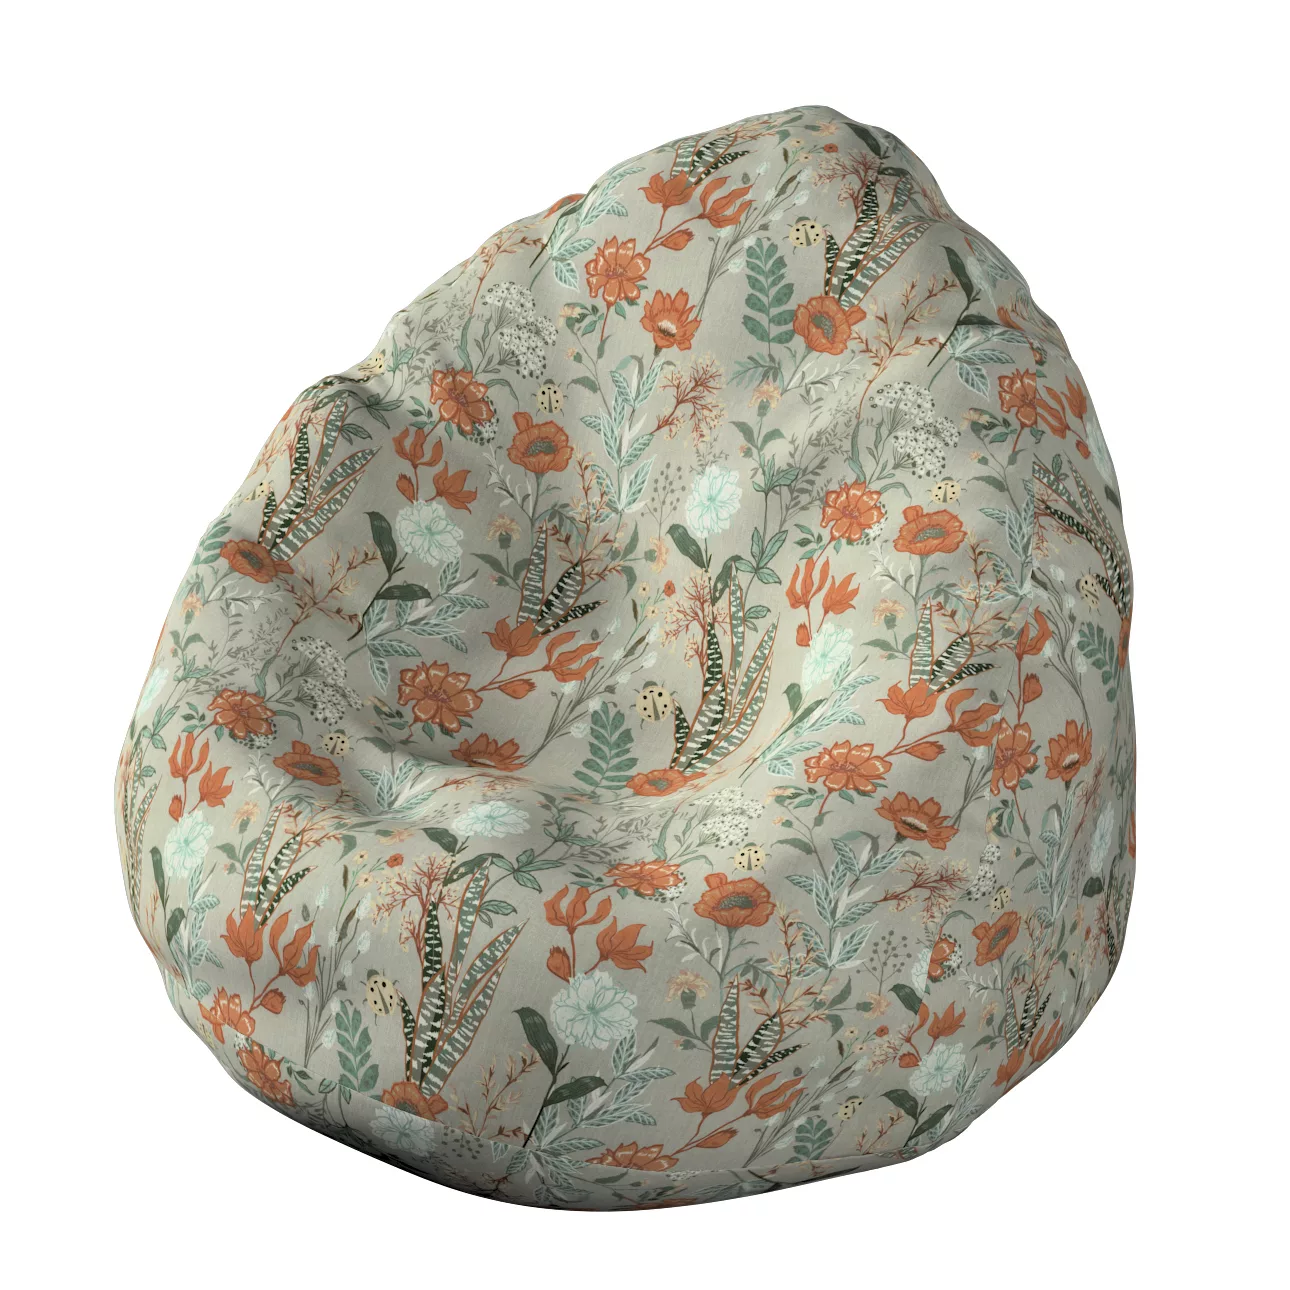 Bezug für Sitzsack, grau-orange-grün, Bezug für Sitzsack Ø80 x 115 cm, Flow günstig online kaufen